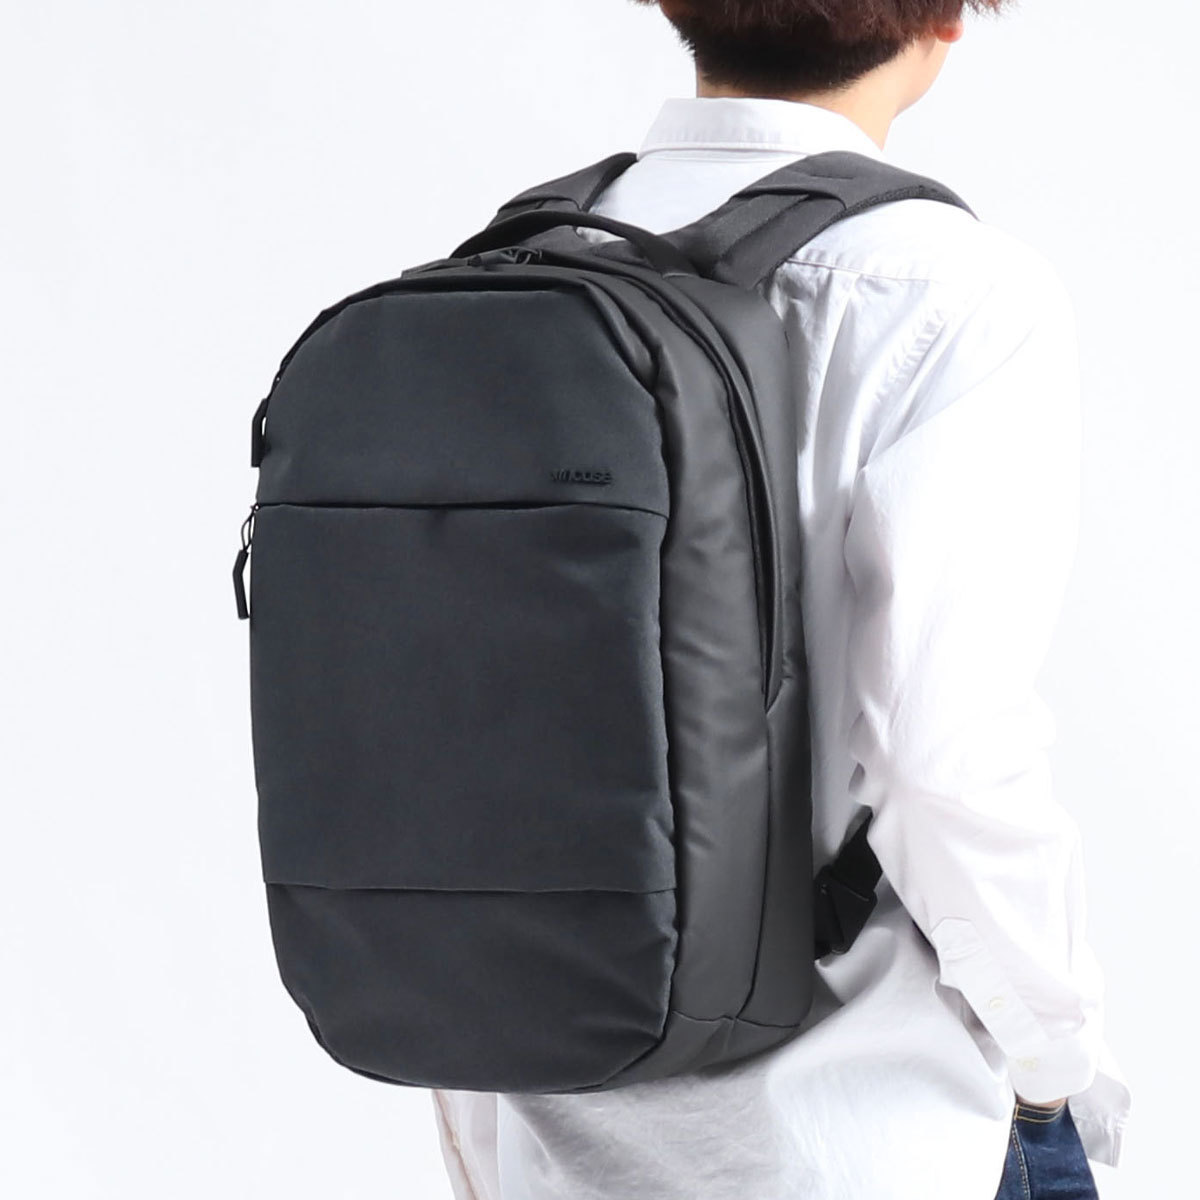 インケース リュック Incase City Compact Backpack シティコンパクトバックパック 小さめ 19.7L A4 ビジネス 通勤  メンズ レディース